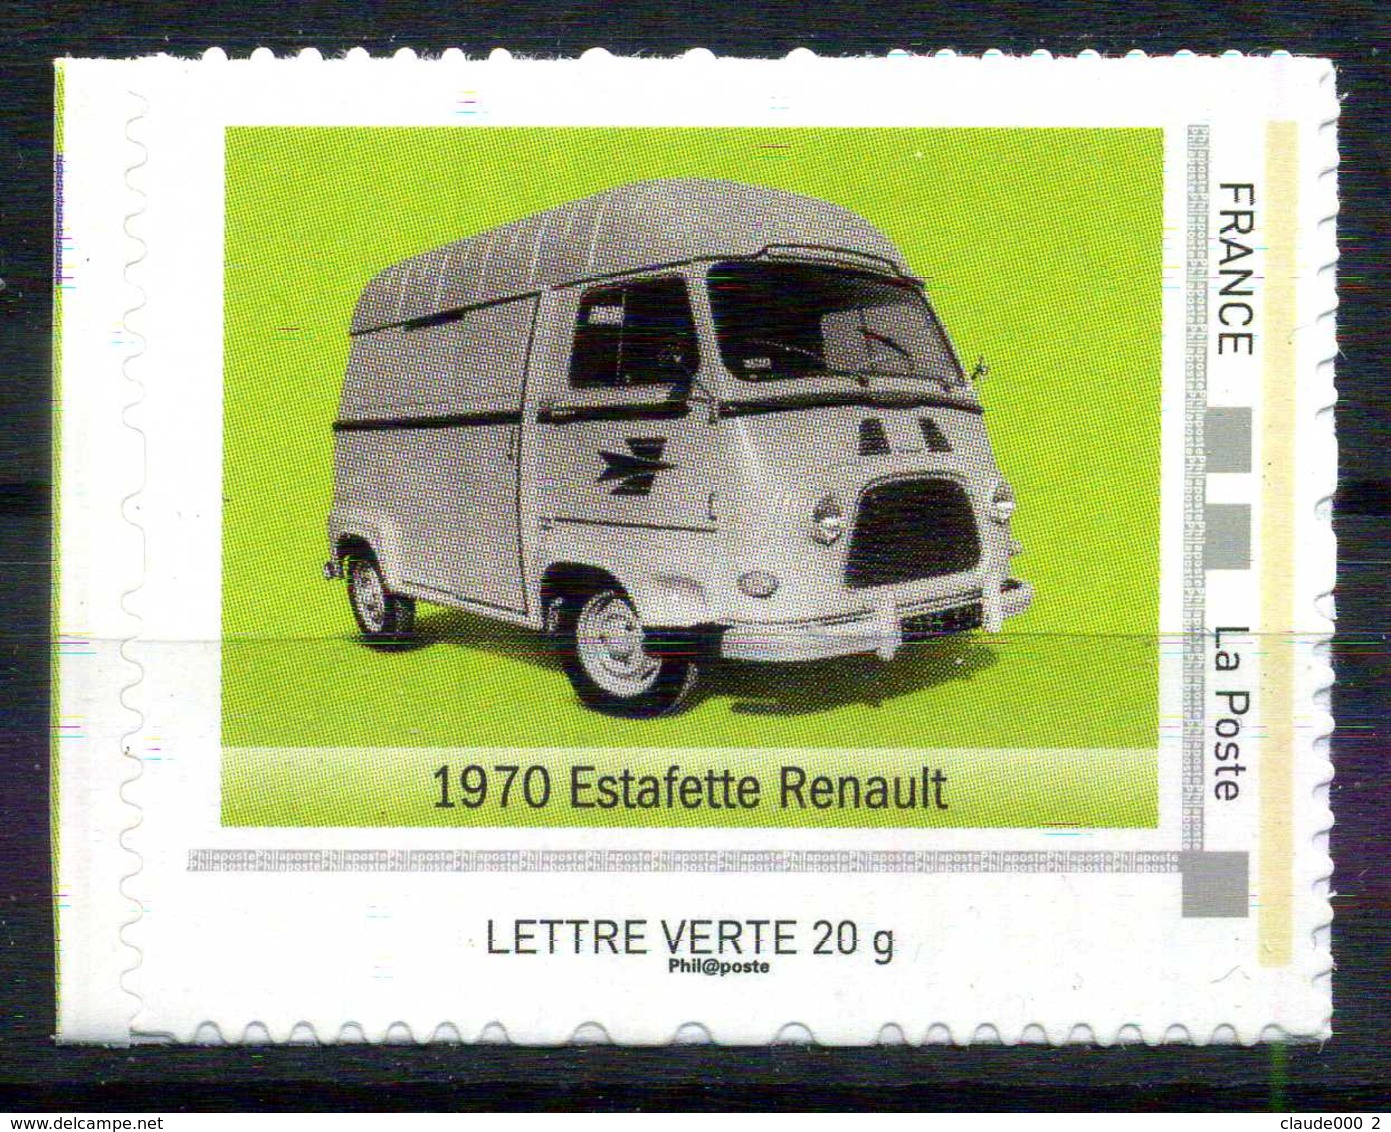 1970 ESTAFETTE RENAULT Adhésif Neuf ** . Collector " L'AUTOMOBILE DANS L'HISTOIRE DE LA POSTE " - Collectors